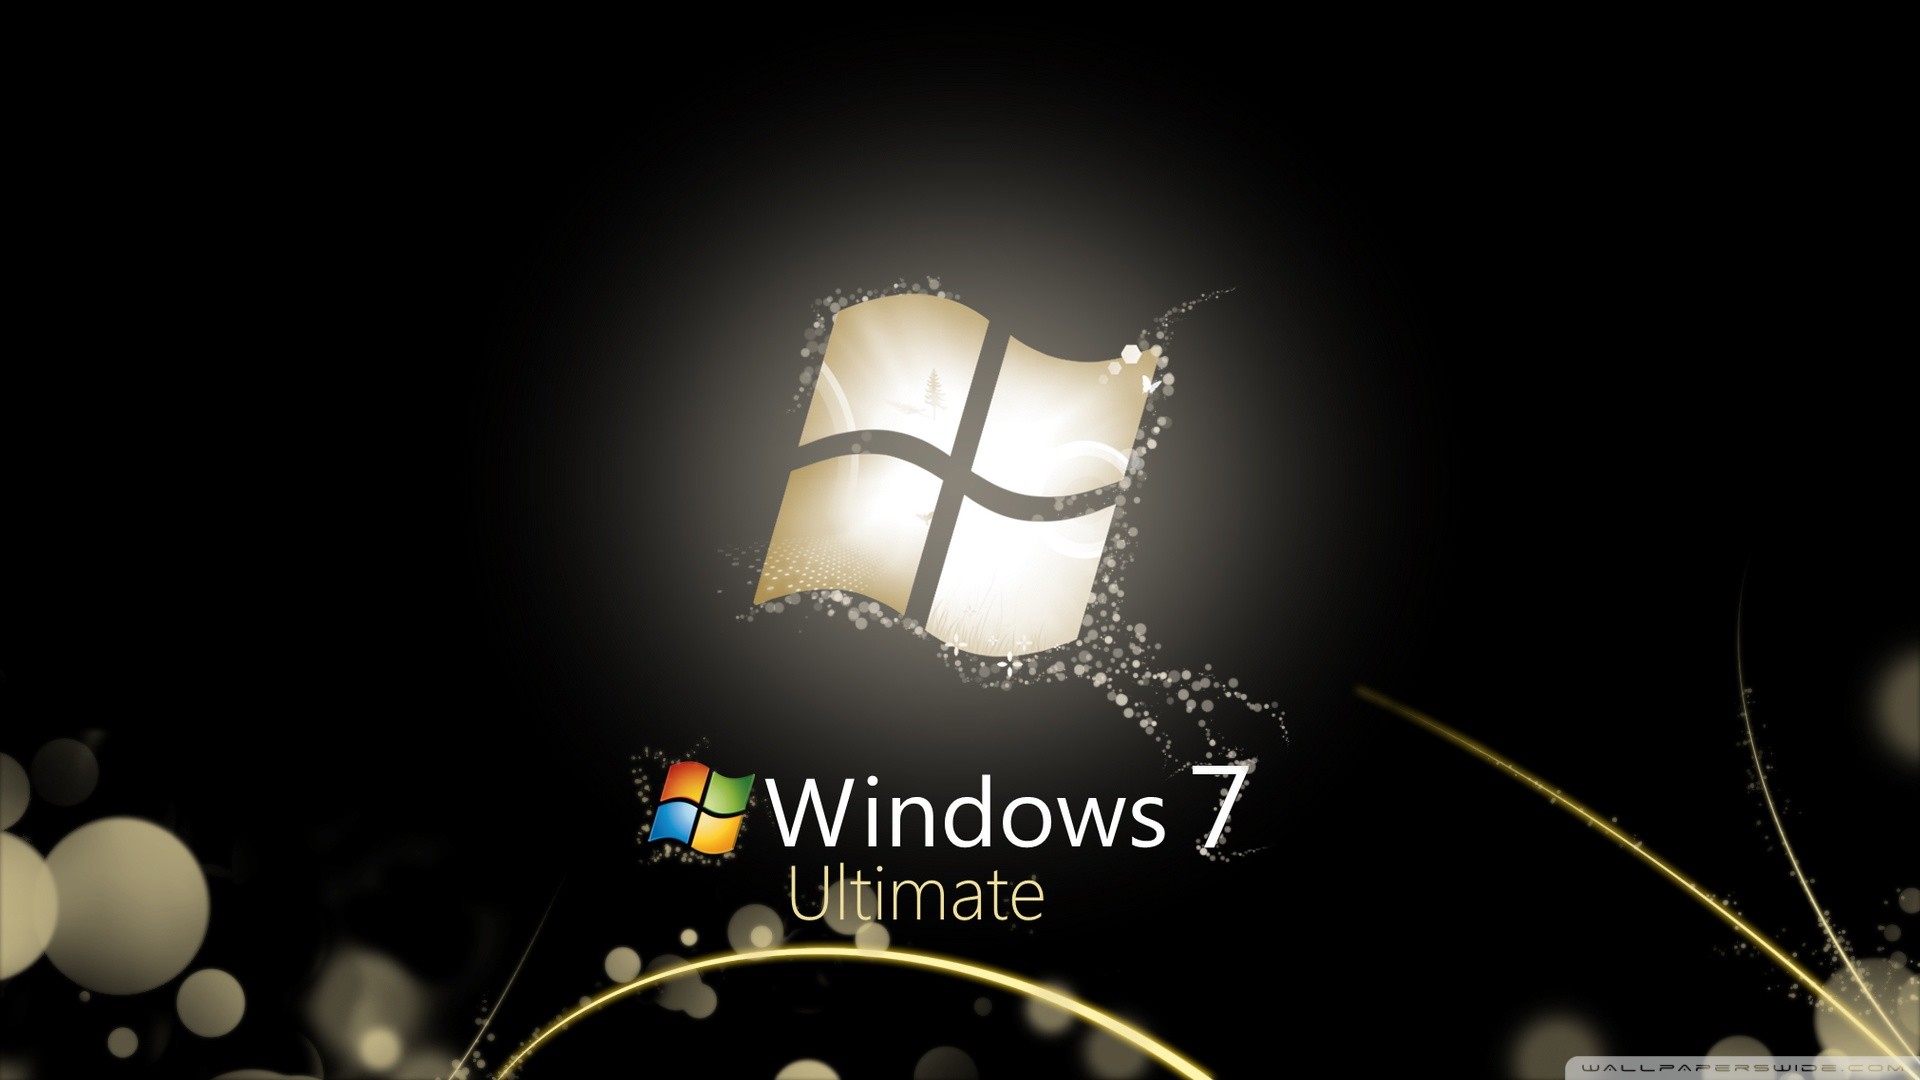 Windows 7 Ultimate Wallpapers: Khám phá bộ sưu tập hình nền đỉnh cao của Windows 7 Ultimate với chất lượng hình ảnh độ phân giải cao. Tận hưởng tinh thần độc đáo và nâng cao trải nghiệm làm việc trên máy tính của bạn với những hình nền đẹp mắt này.